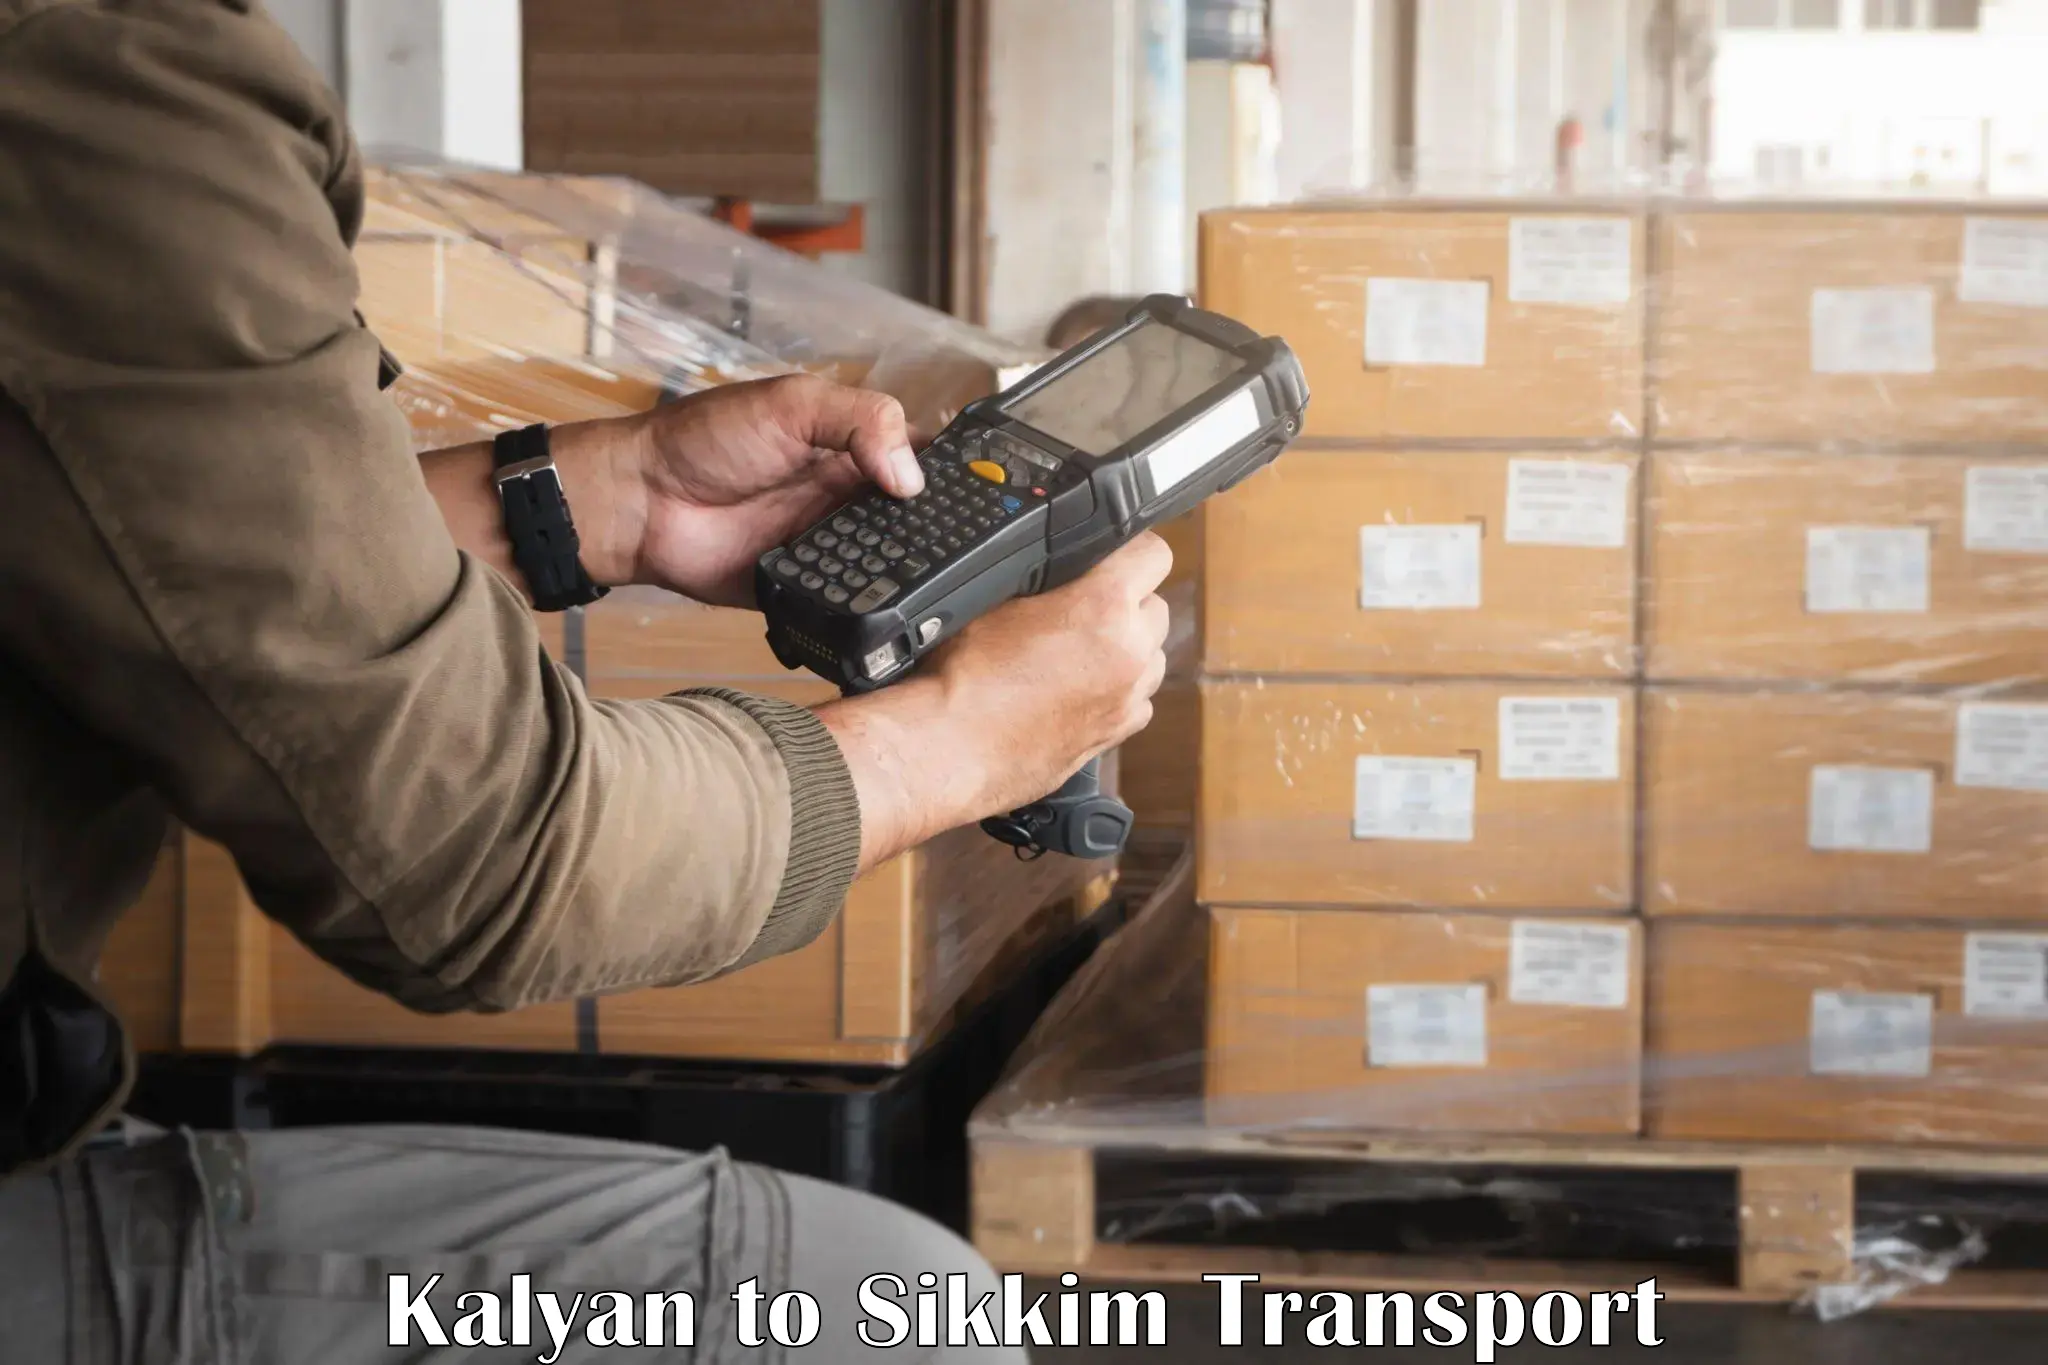 Land transport services Kalyan to Pelling